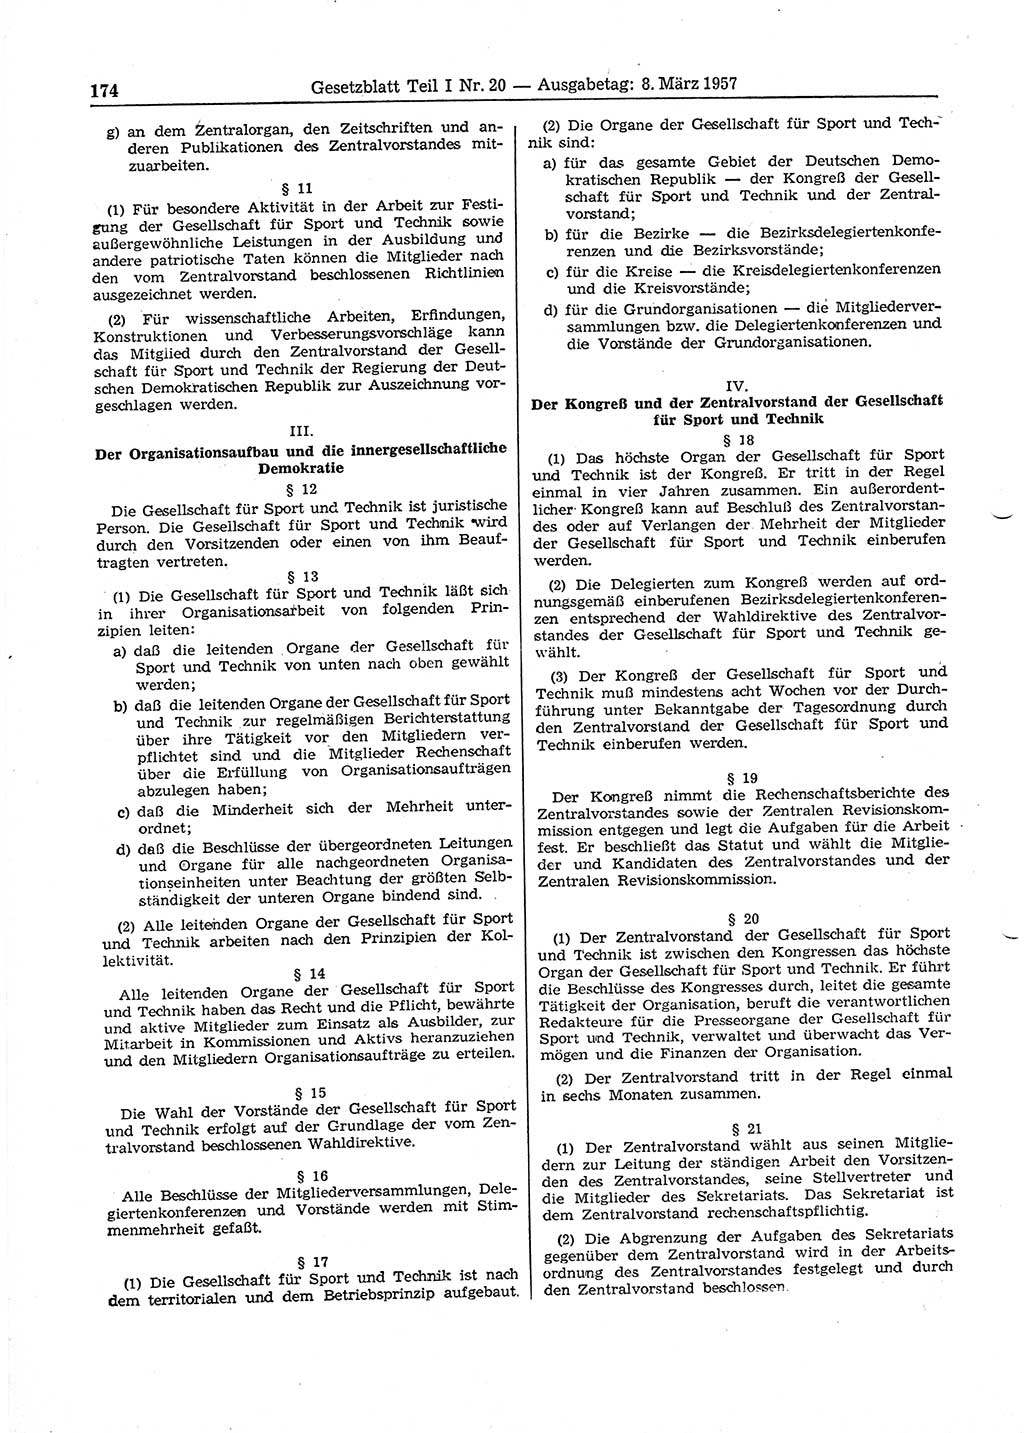 Gesetzblatt (GBl.) der Deutschen Demokratischen Republik (DDR) Teil Ⅰ 1957, Seite 174 (GBl. DDR Ⅰ 1957, S. 174)